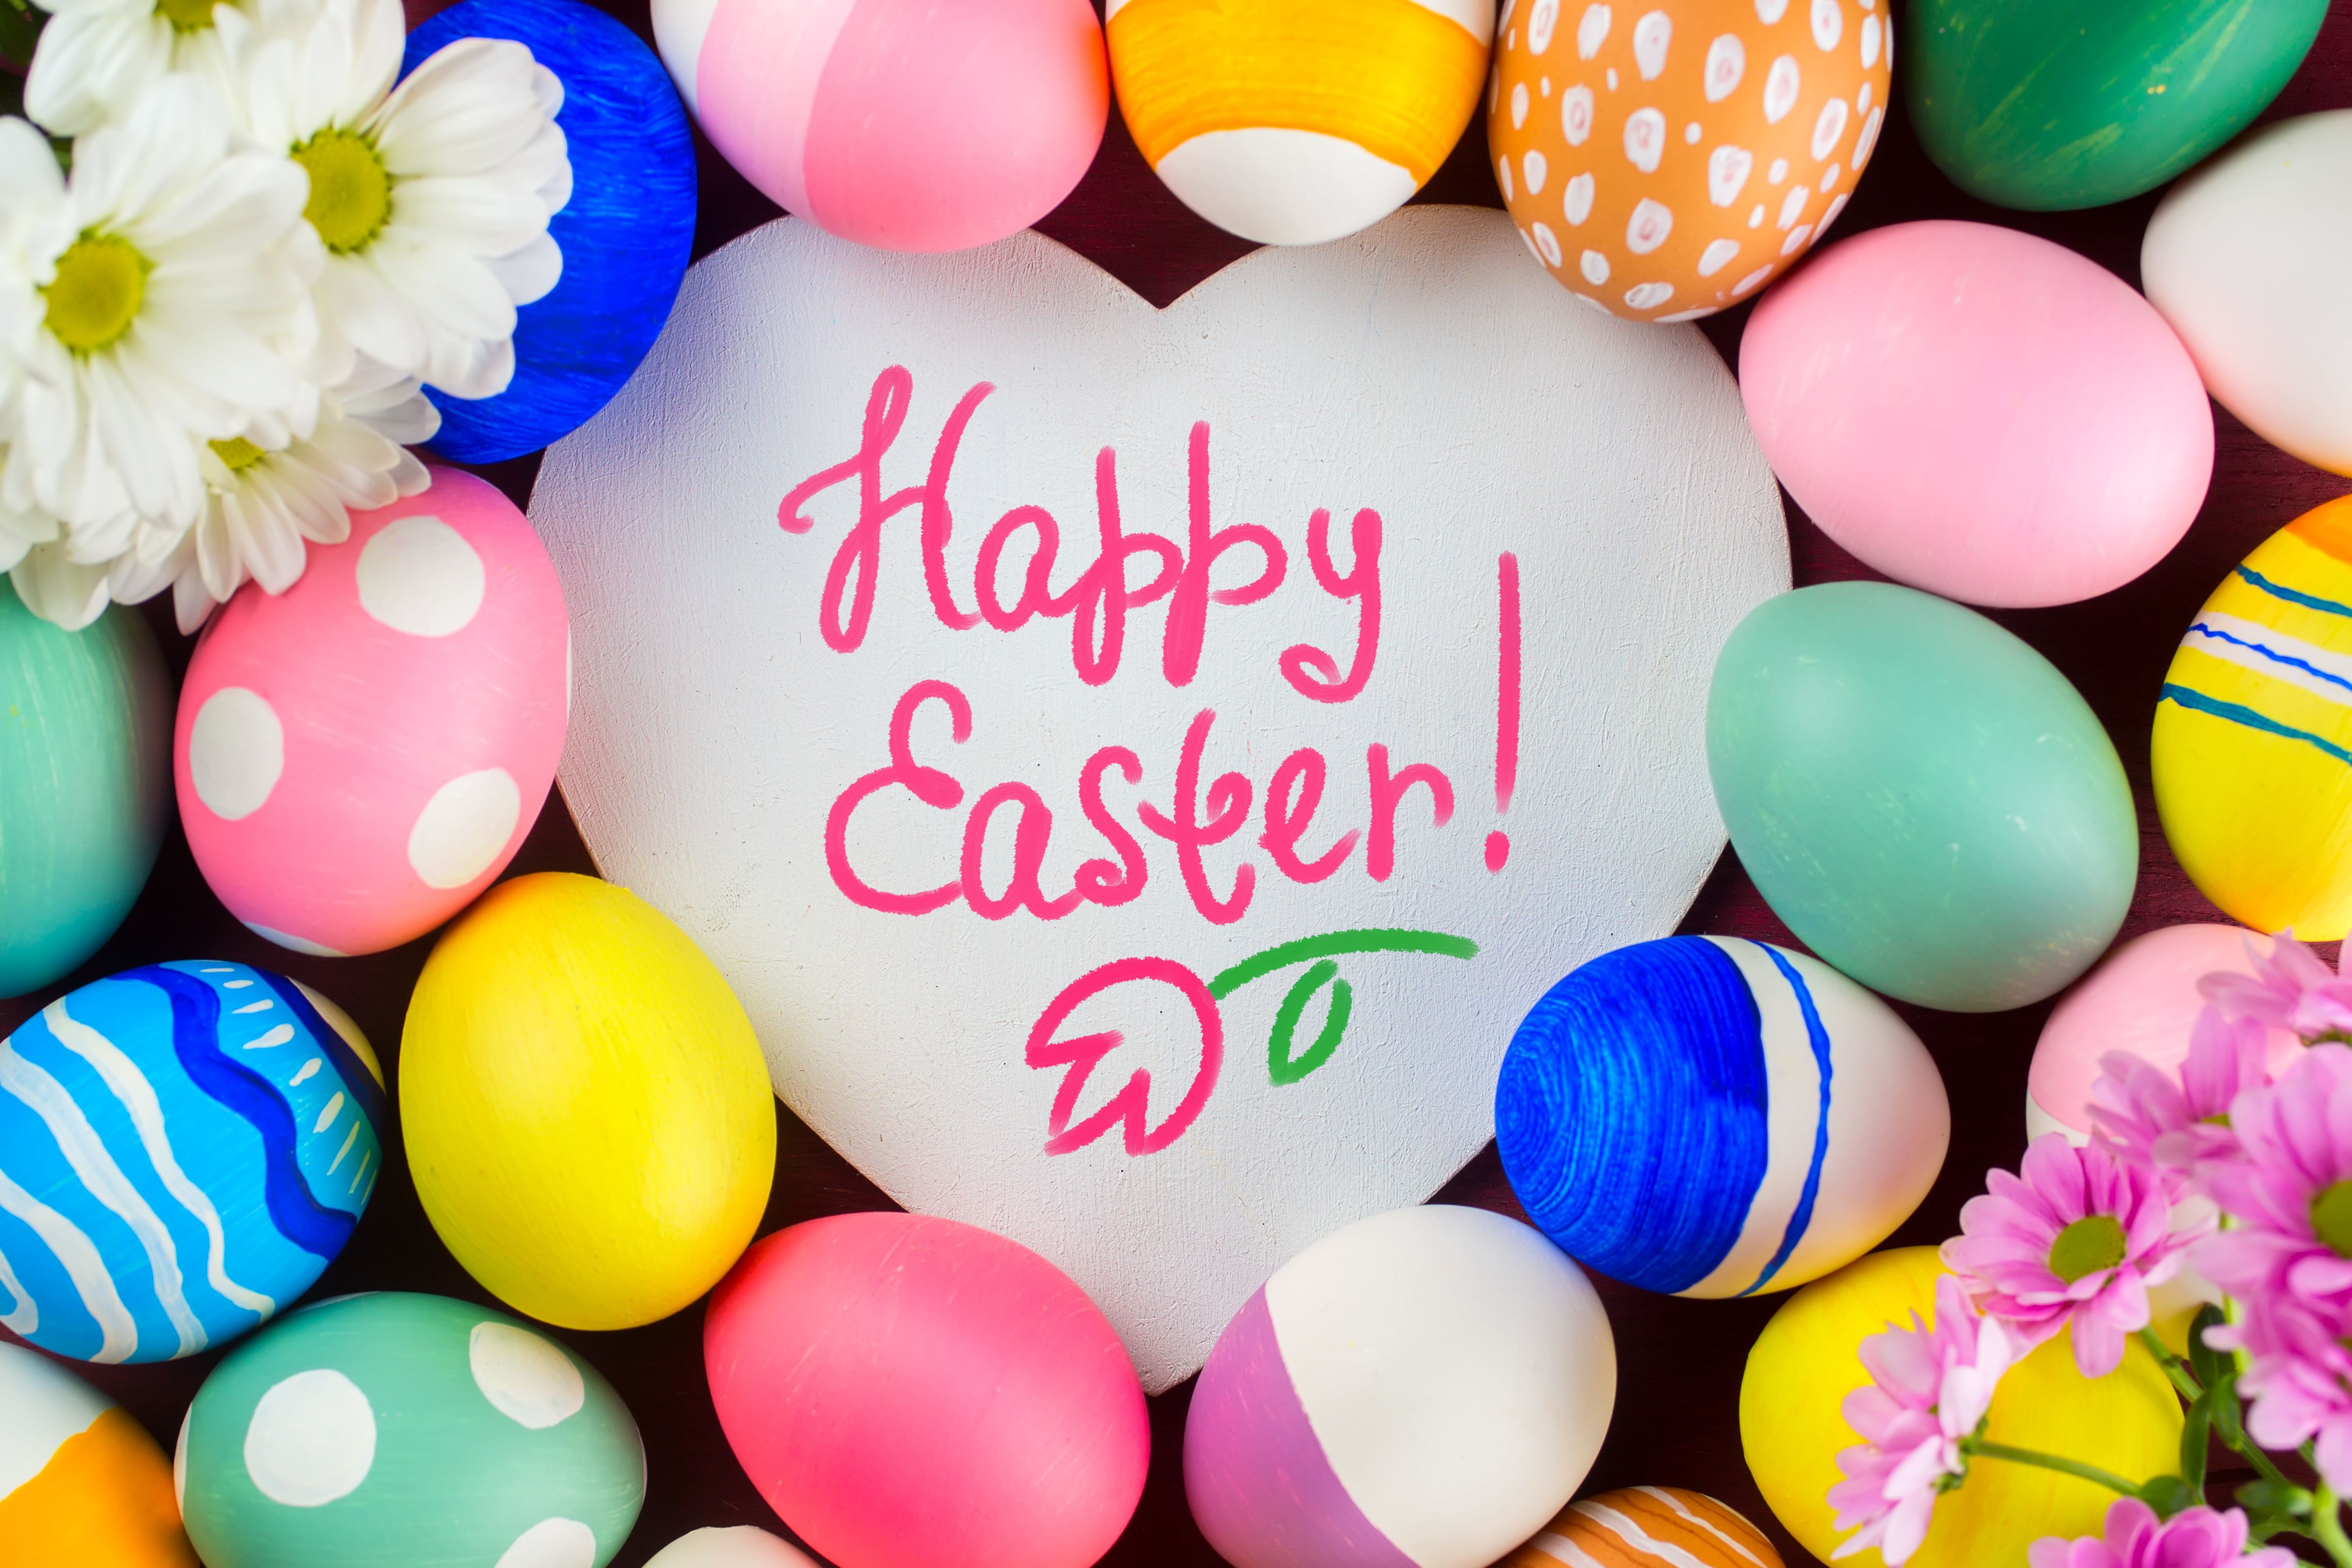 eaggs, Easter, heart, happy easter, easter eggs, flowers wallpaper